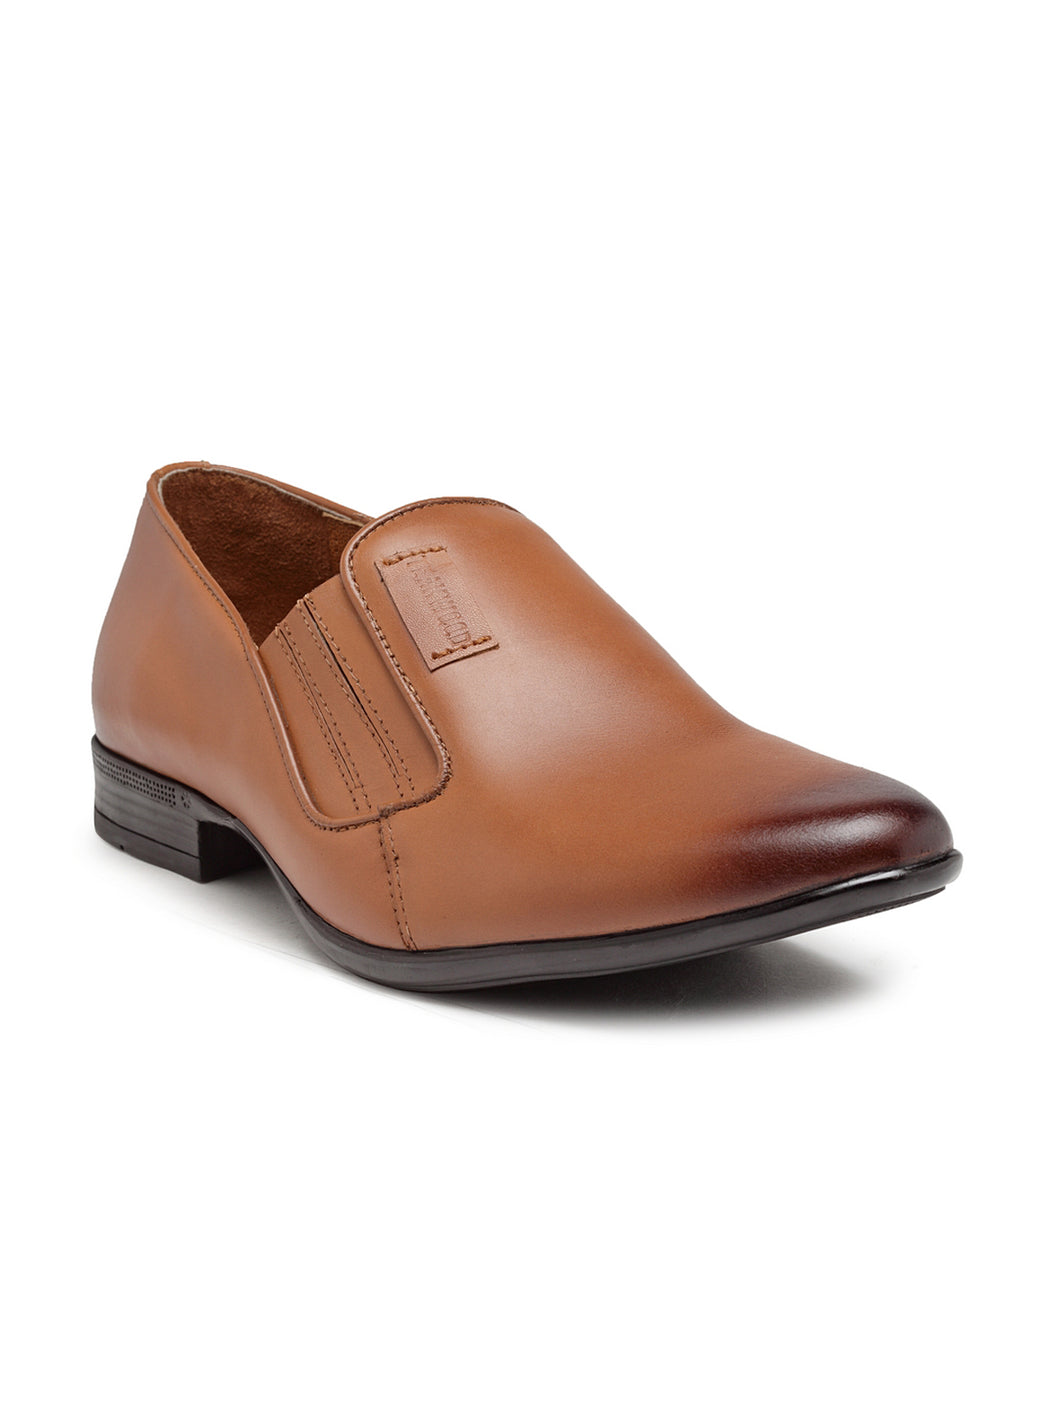 Teakwood Genuine Leather Tan Slip-On Shoes